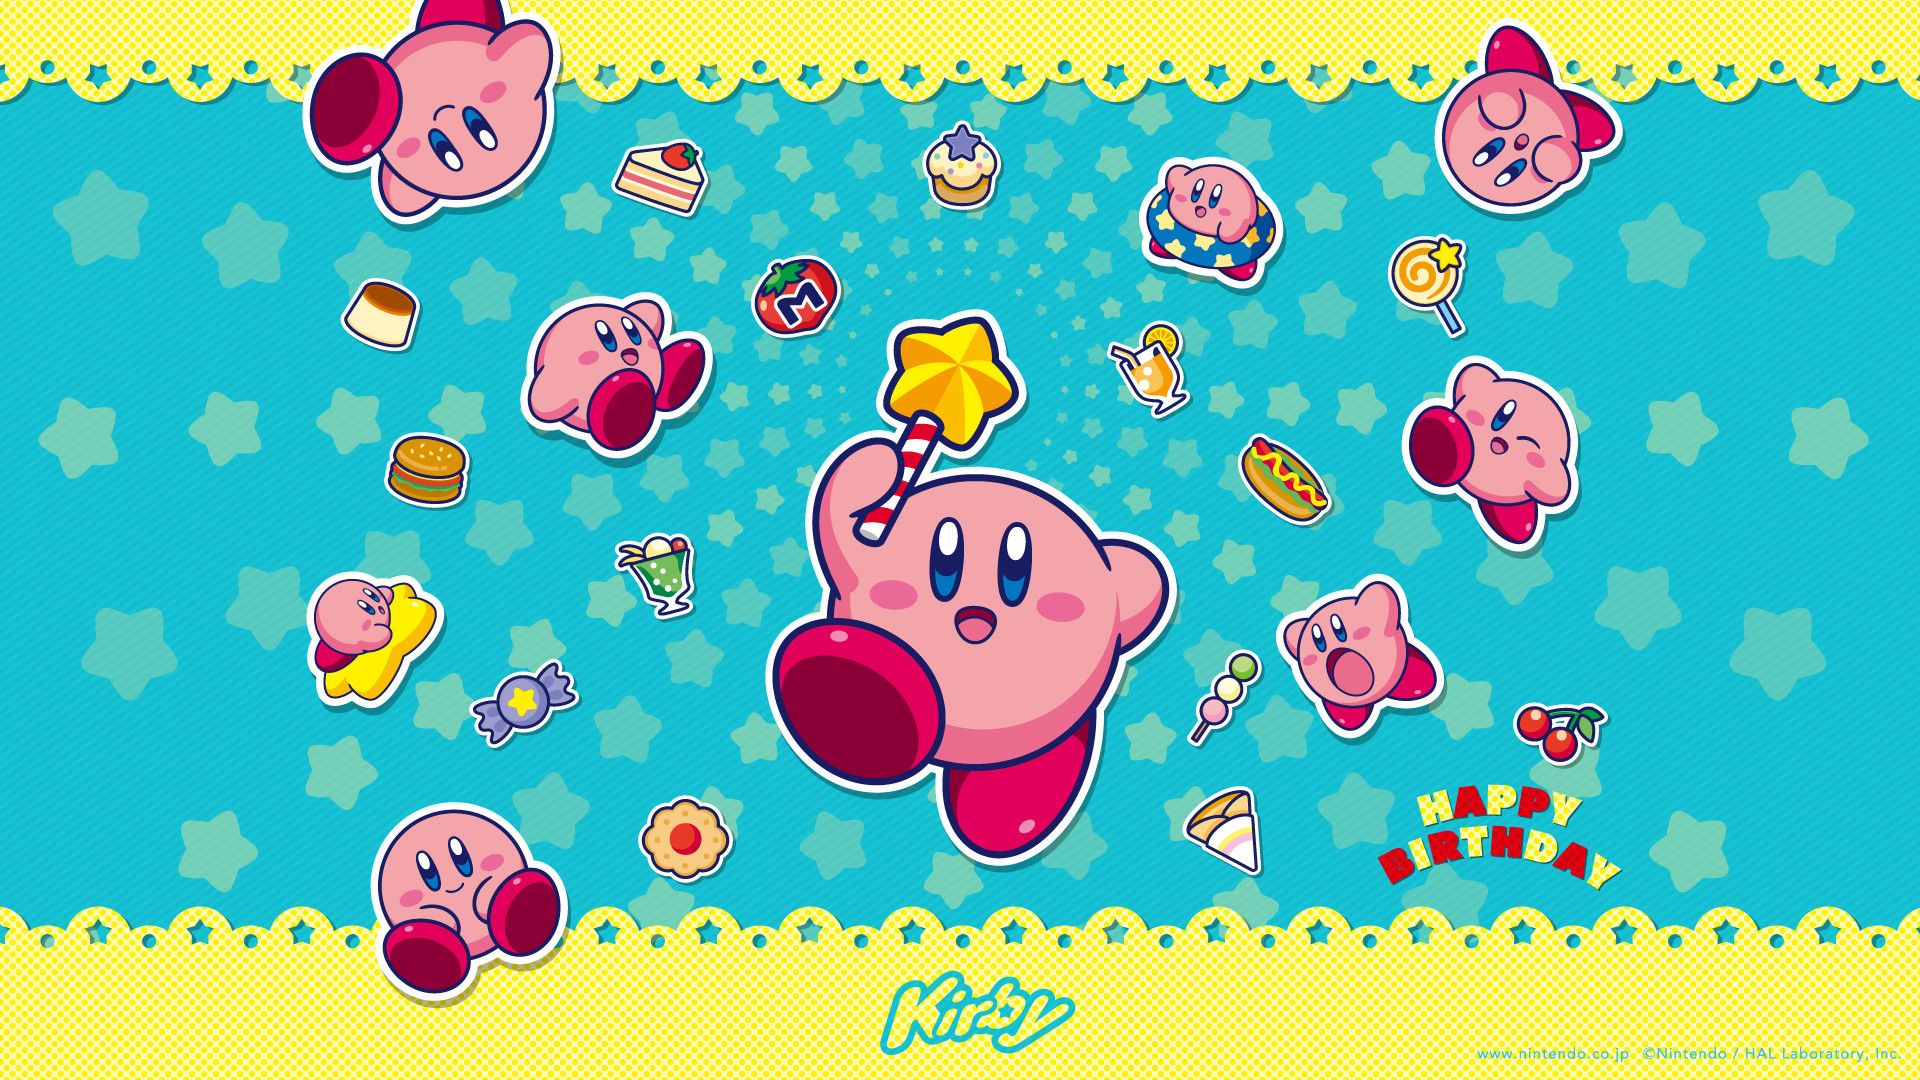 Trang WallpaperDog lại xuất hiện với một bộ sưu tập hình nền Kirby vô cùng tuyệt đẹp. Bạn sẽ có cơ hội lựa chọn từ những bức ảnh đáng yêu cho đến những bức ảnh đậm chất nghệ thuật. Với nhiều độ phân giải khác nhau, WallpaperDog sẽ làm bạn say mê và muốn tải về ngay để sử dụng làm hình nền máy tính của mình!